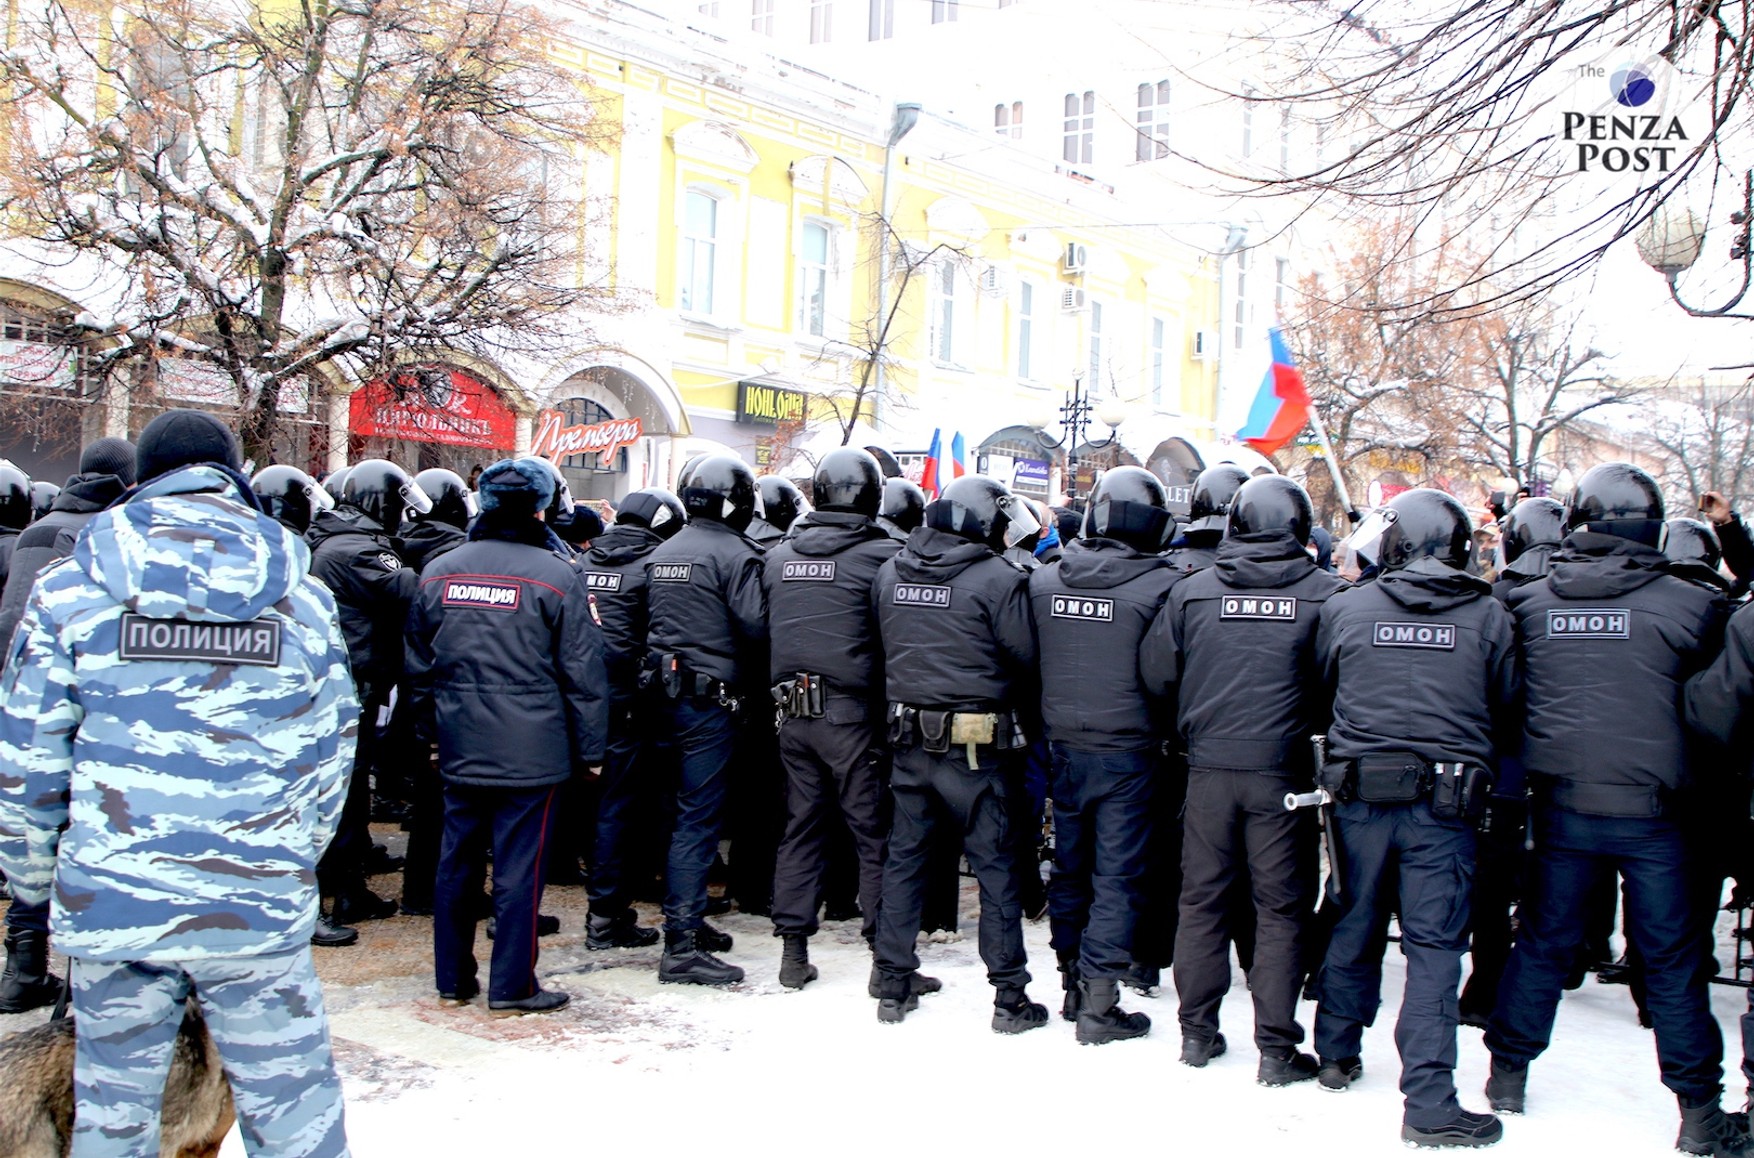 Поліція Пензи подала позов до голови місцевого штабу Навального на 900 тисяч рублів за те, що силовикам довелося працювати на мітингу в вихідний